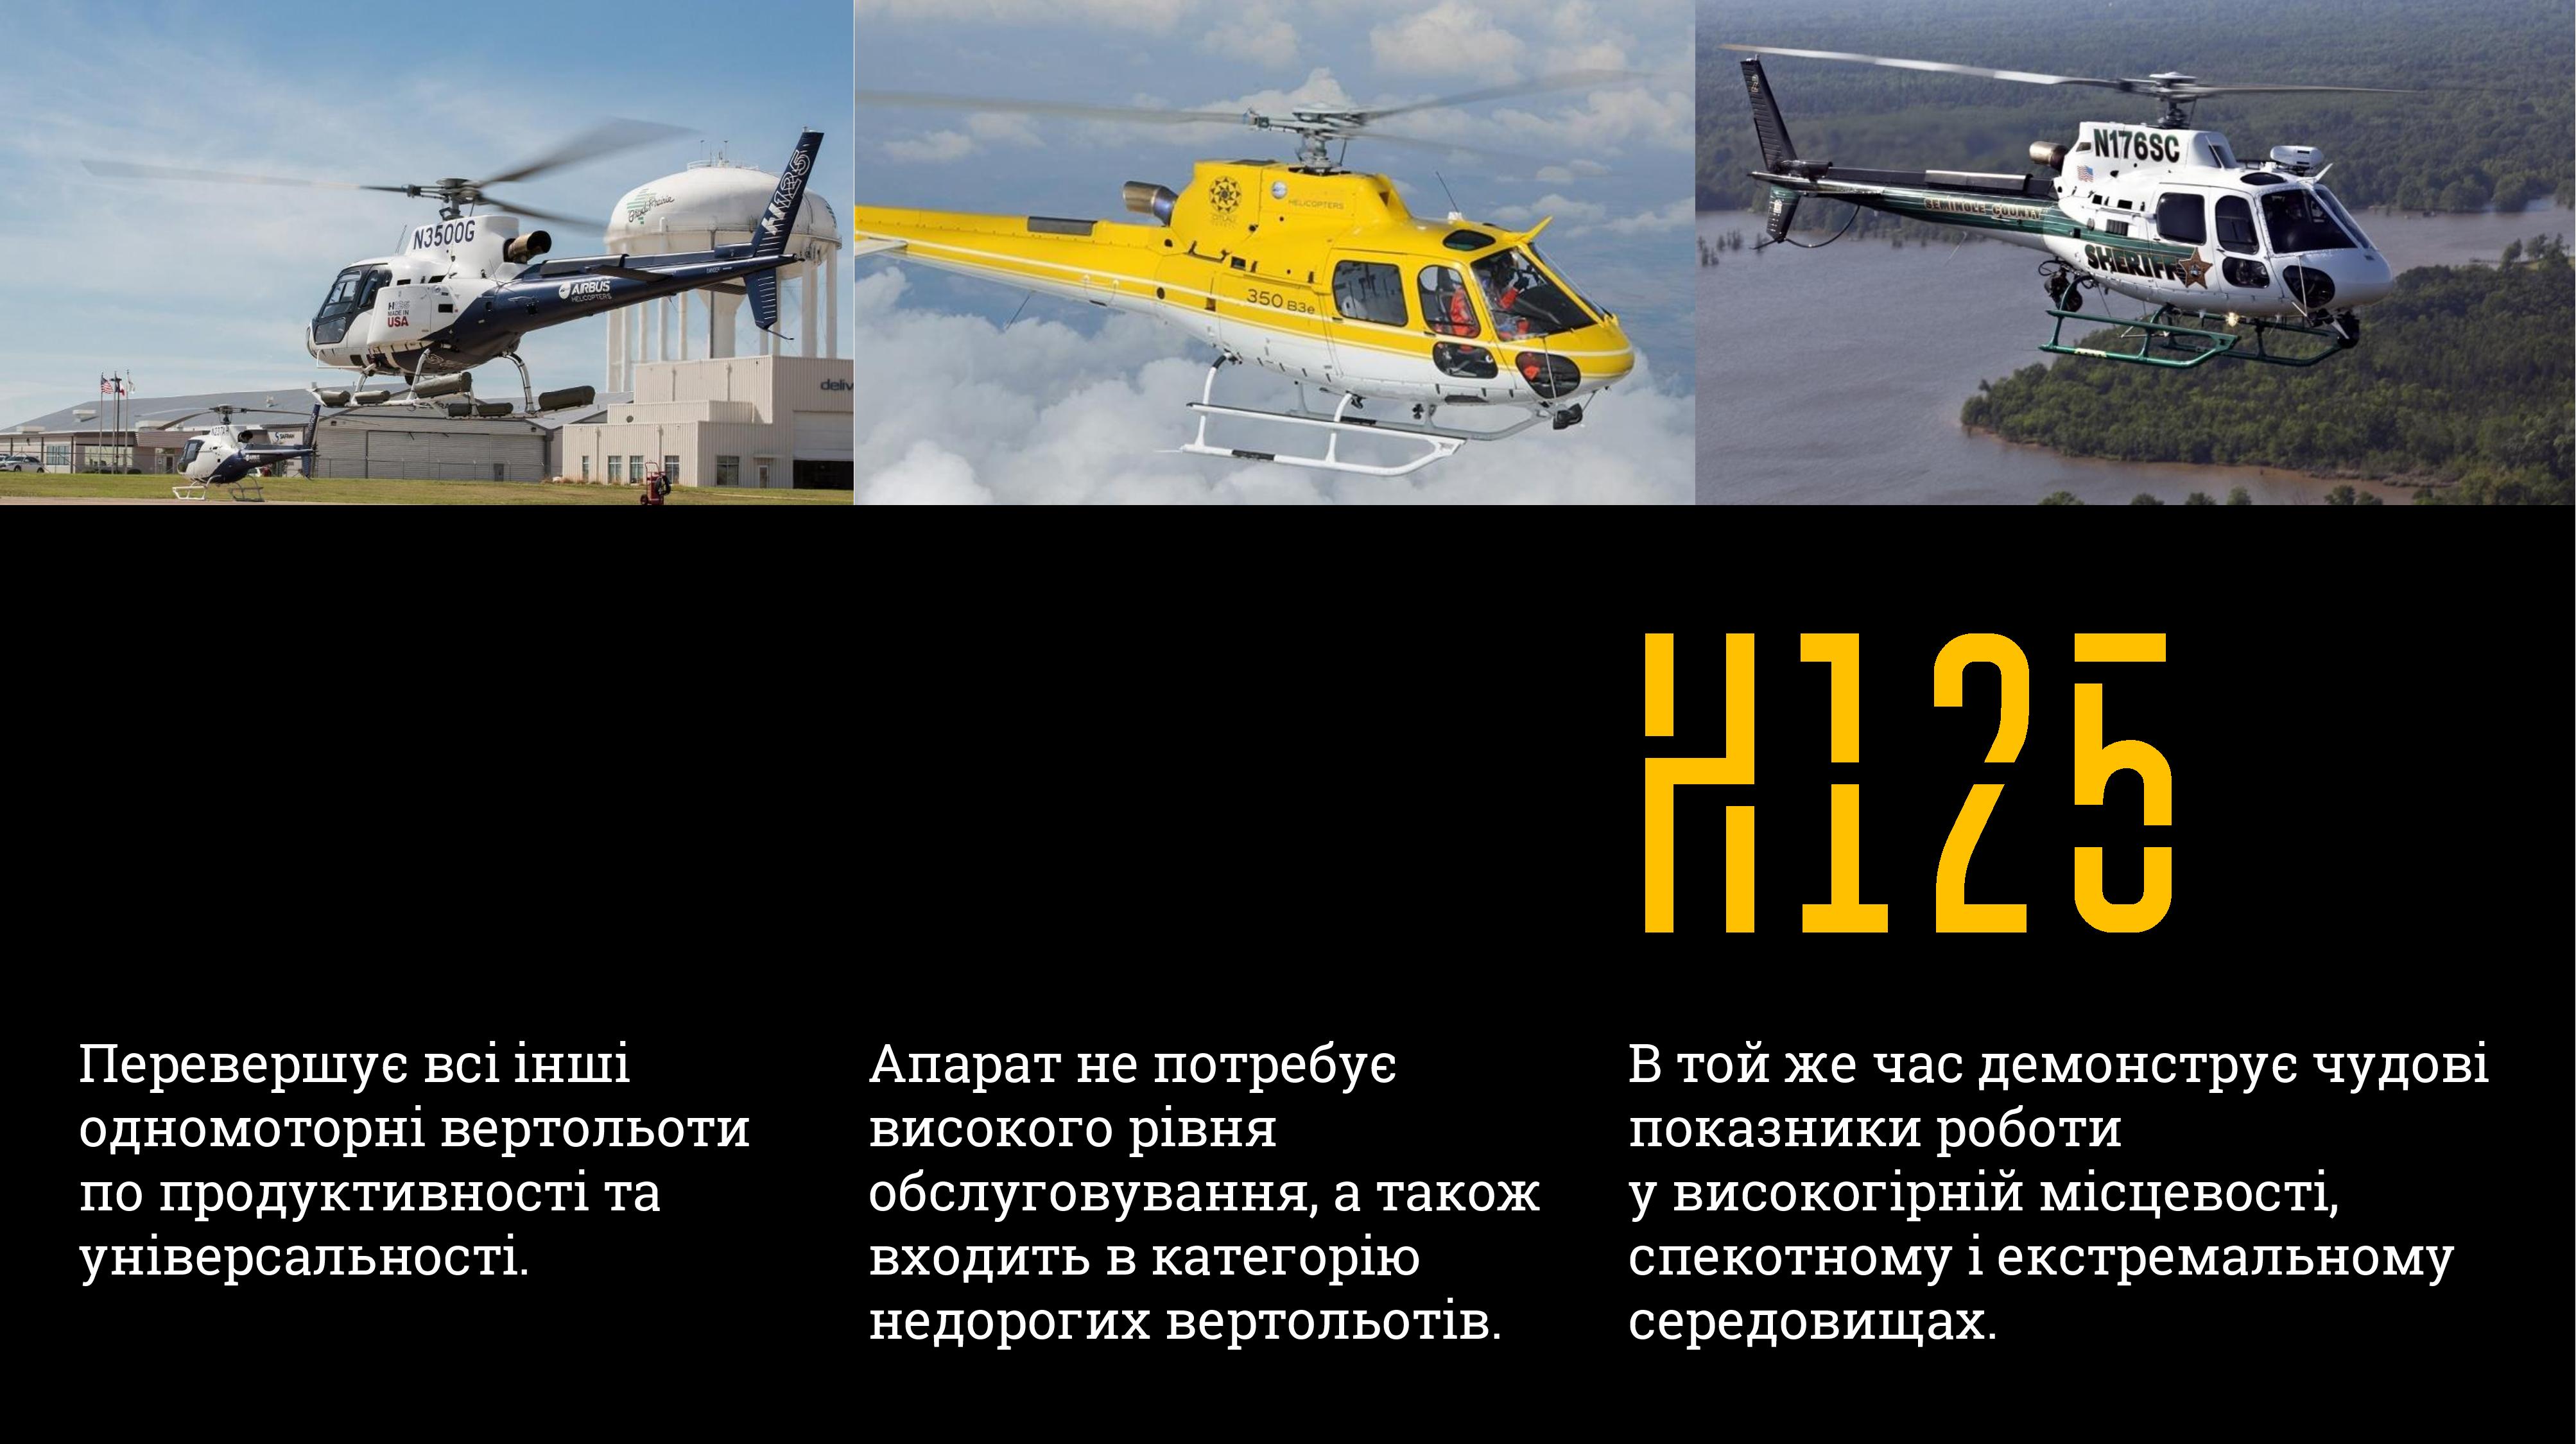 Україна та Франція підписали контракт на придбання 55 гелікоптерів. Кому їх передадуть? (ФОТО)